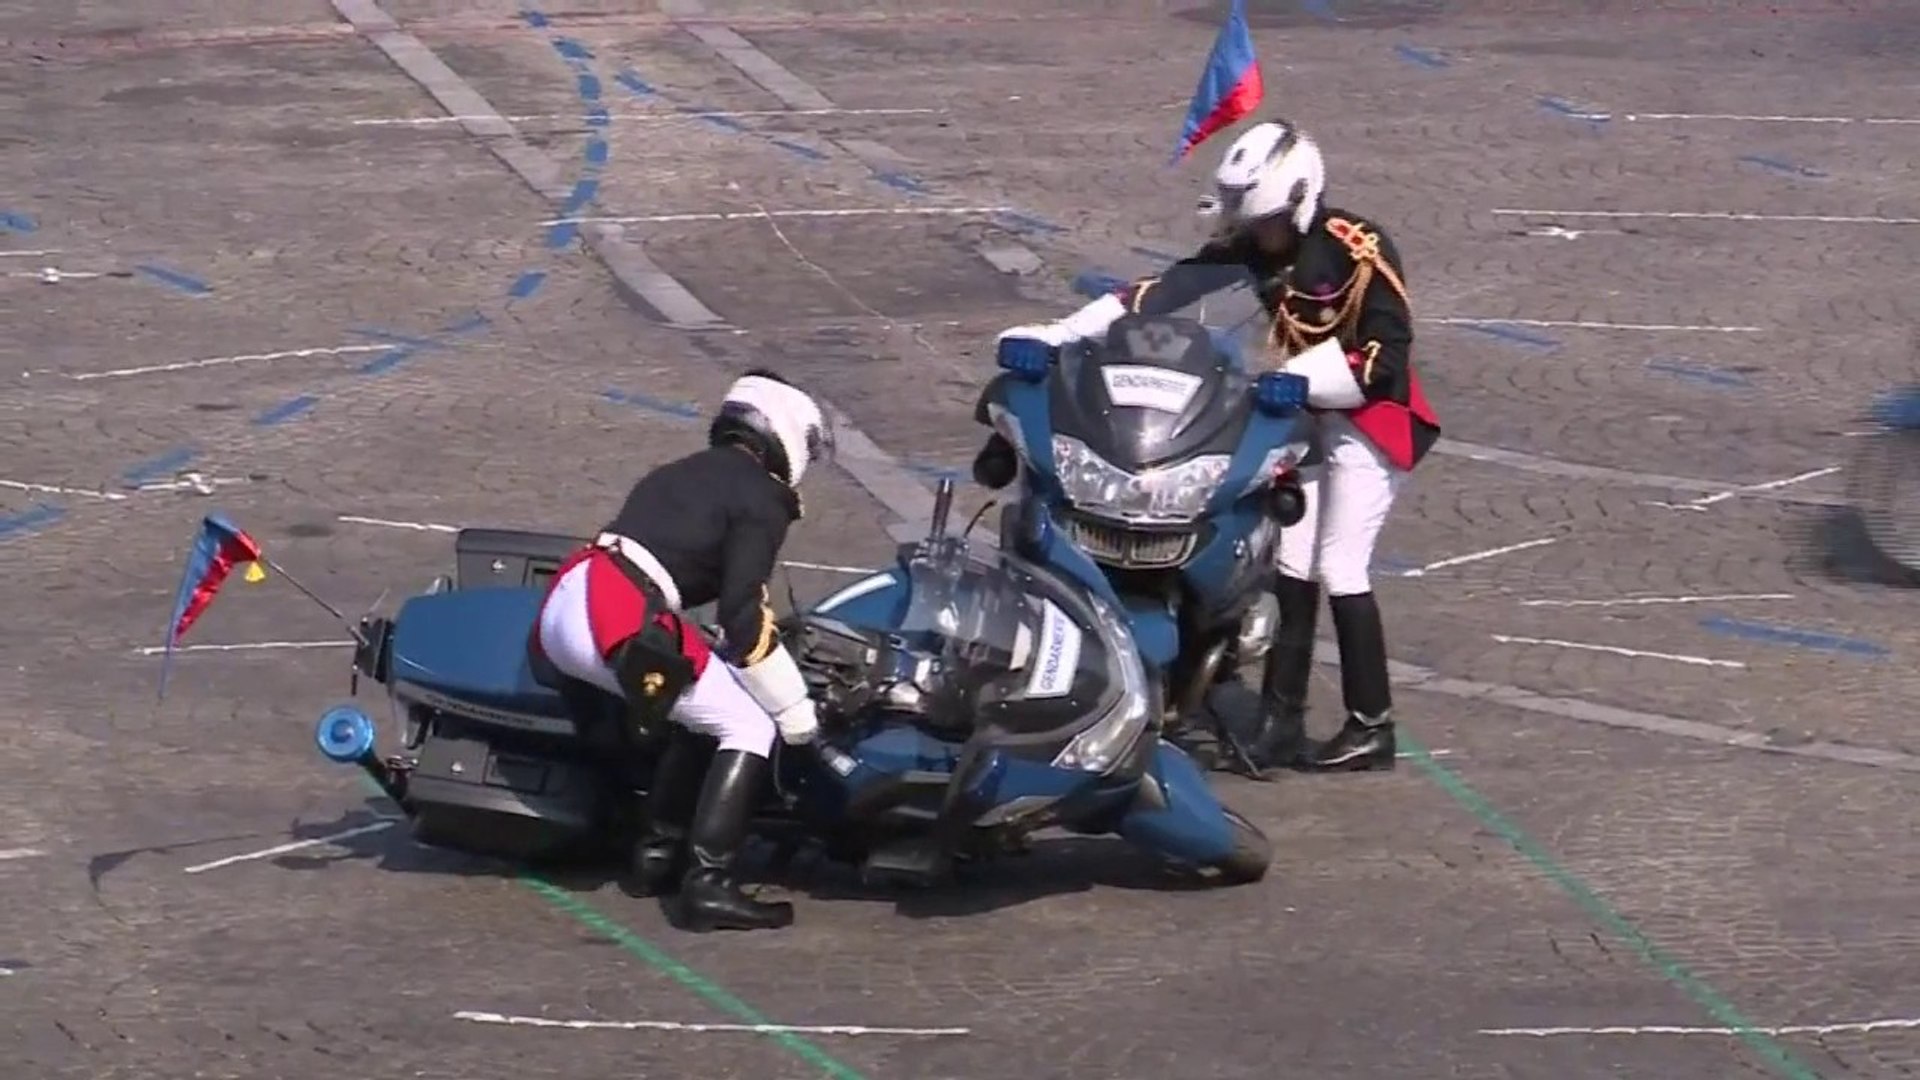 14-Juillet: les images des deux motards de la gendarmerie entrés en  collision, sans gravité, pendant le défilé - Vidéo Dailymotion